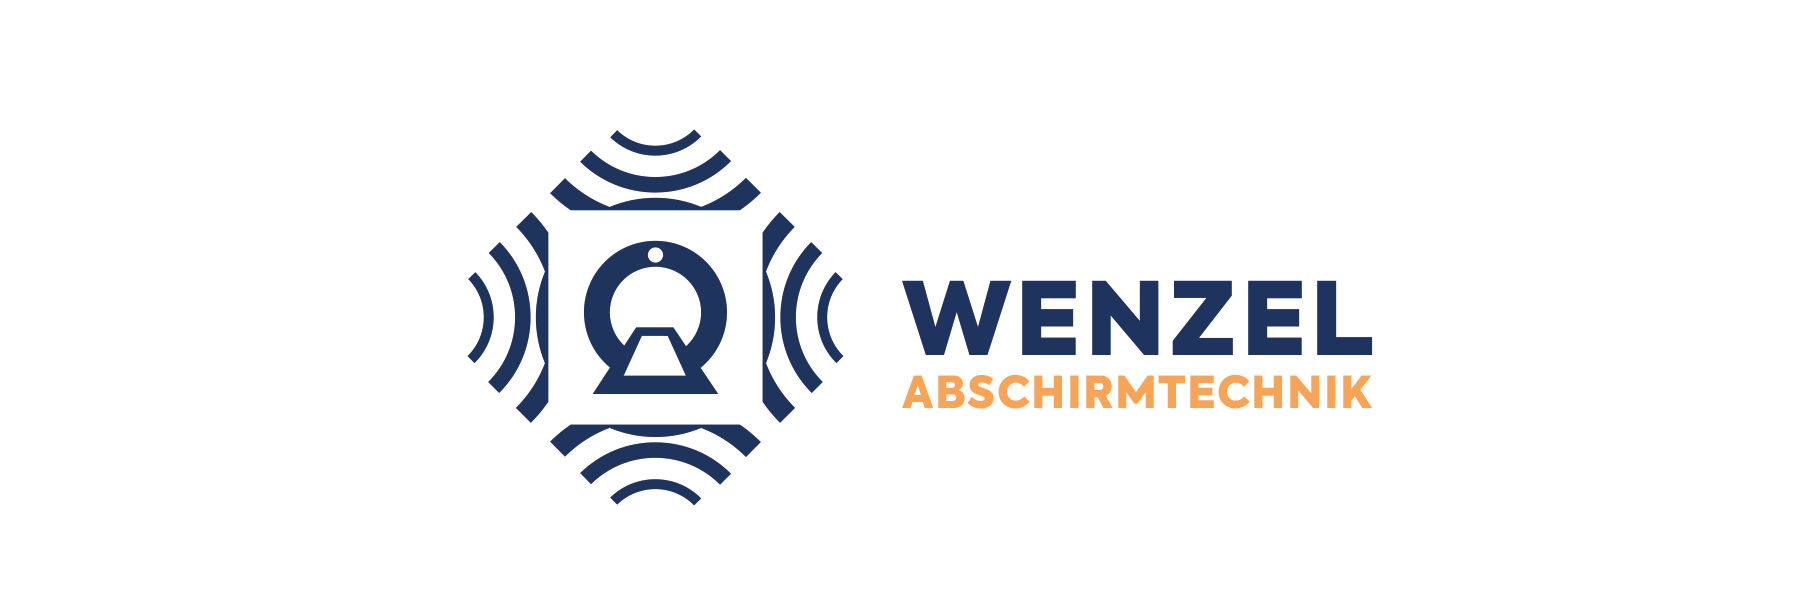 Wenzel Abschirmtechnik